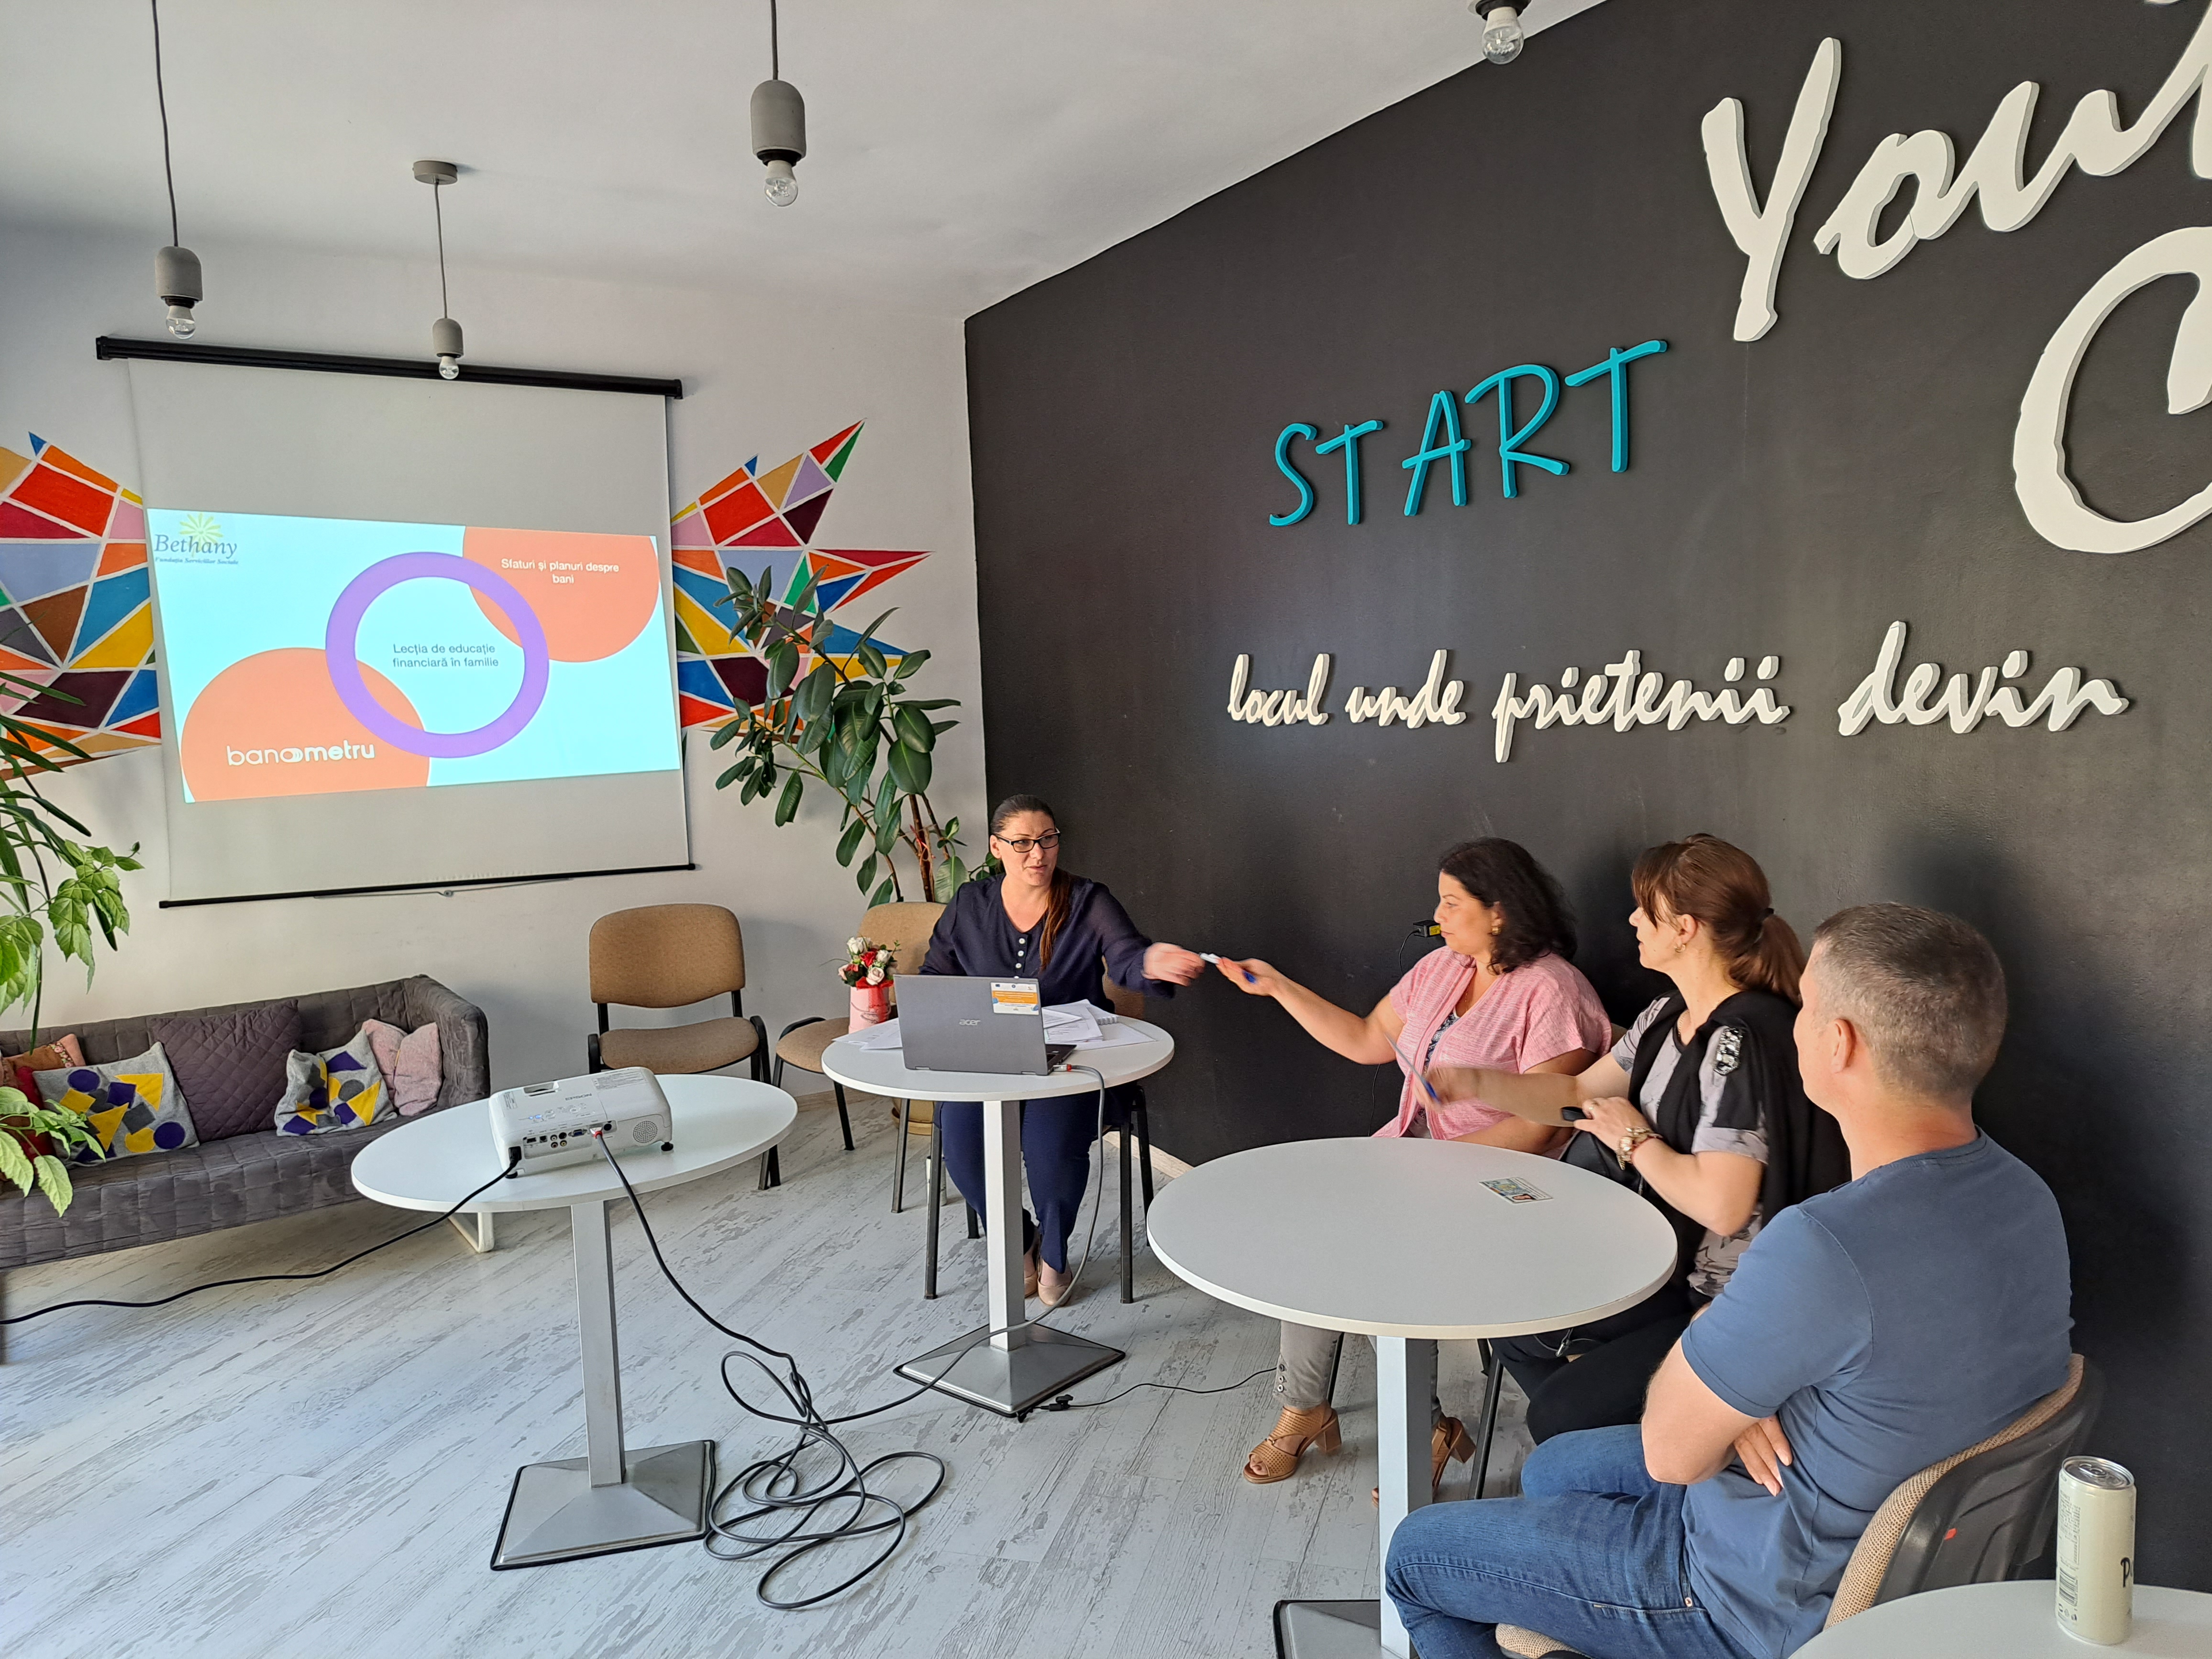 Proiectul „BANOMETRU” – lecția de sănătate financiară în familie – a fost încheiat cu succes la Iași